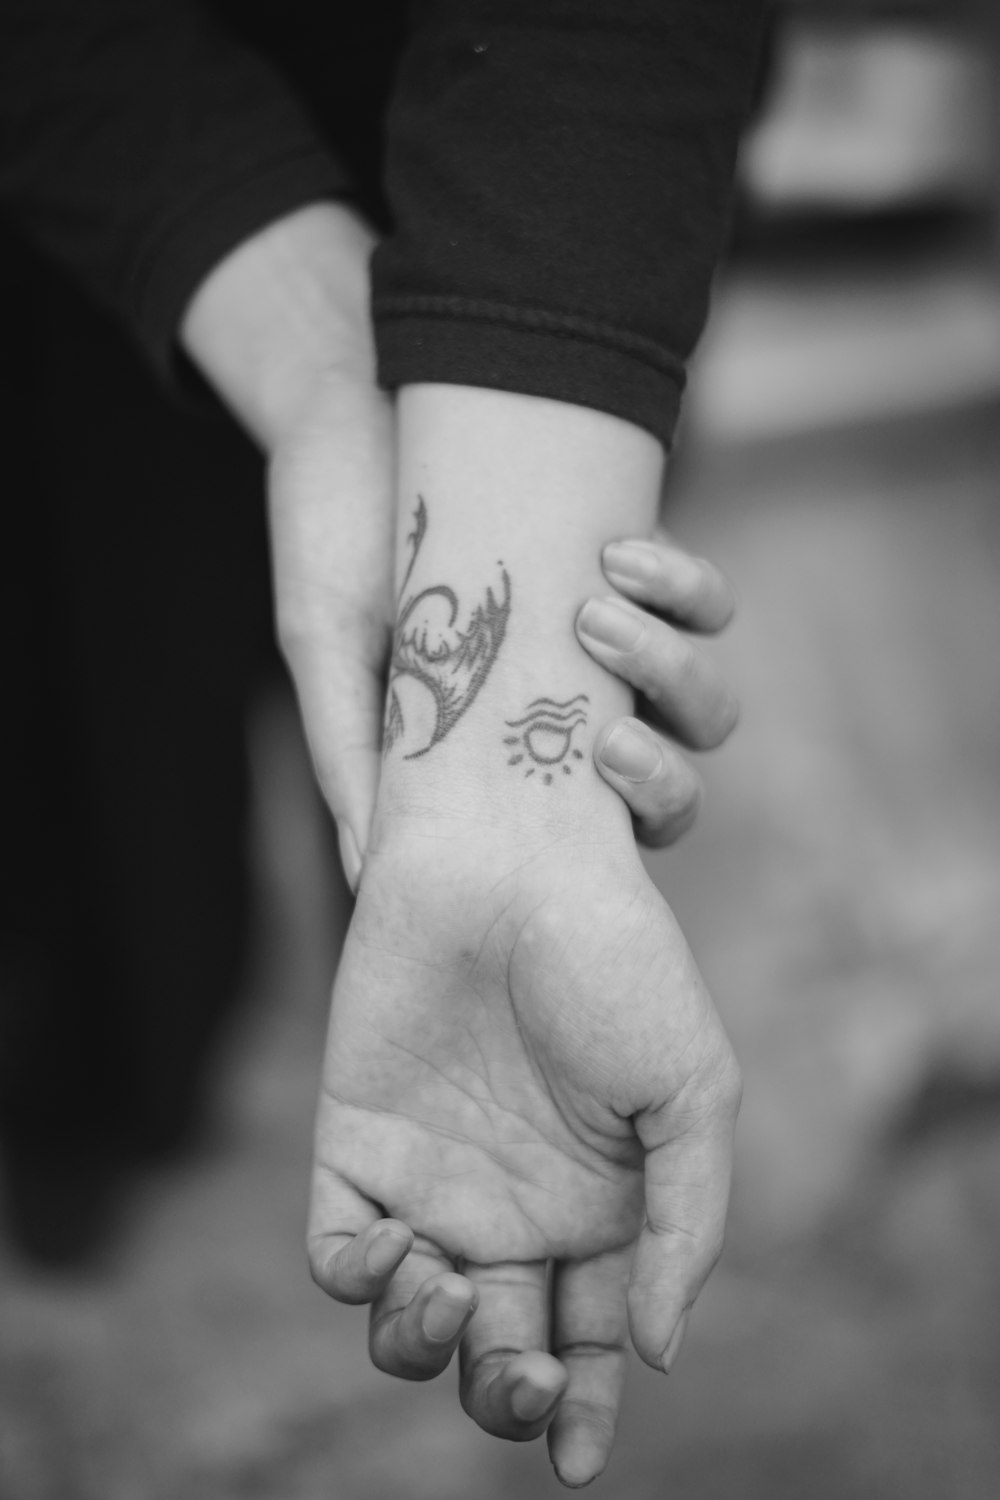 photo en niveaux de gris de la main humaine avec tatouage